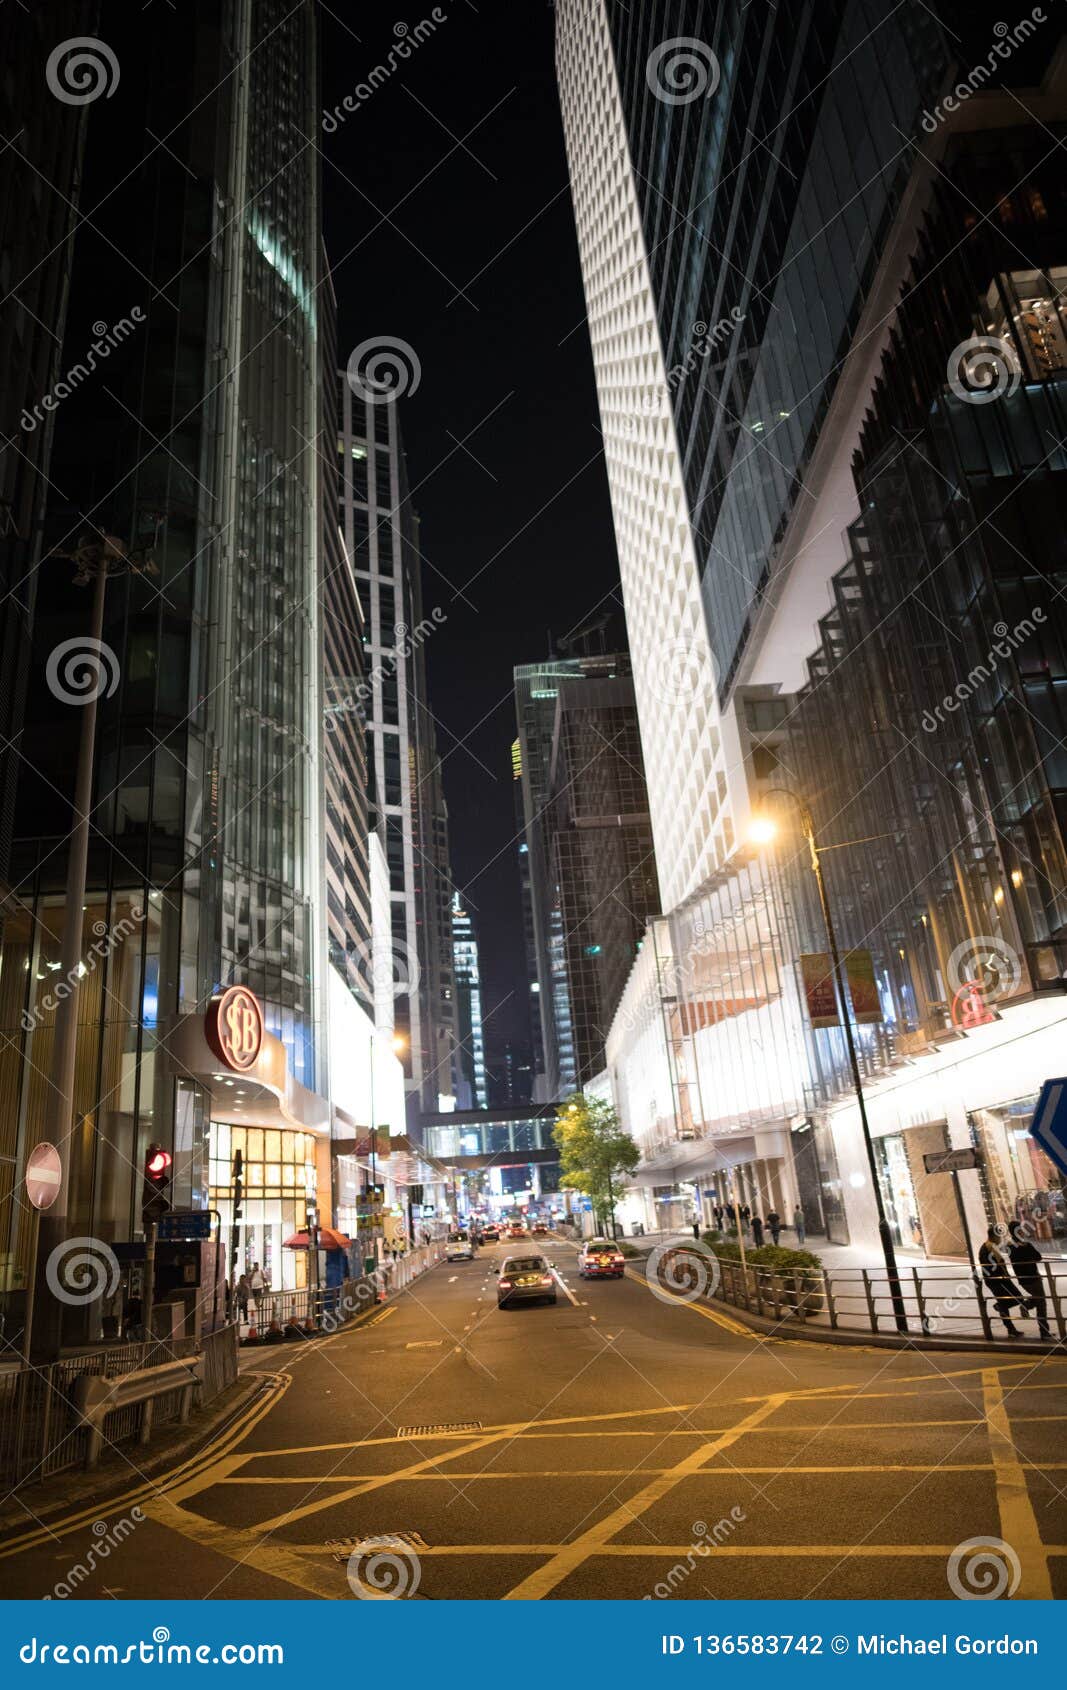 Hong Kong Vibrant Global City Editorial Photography - Image of